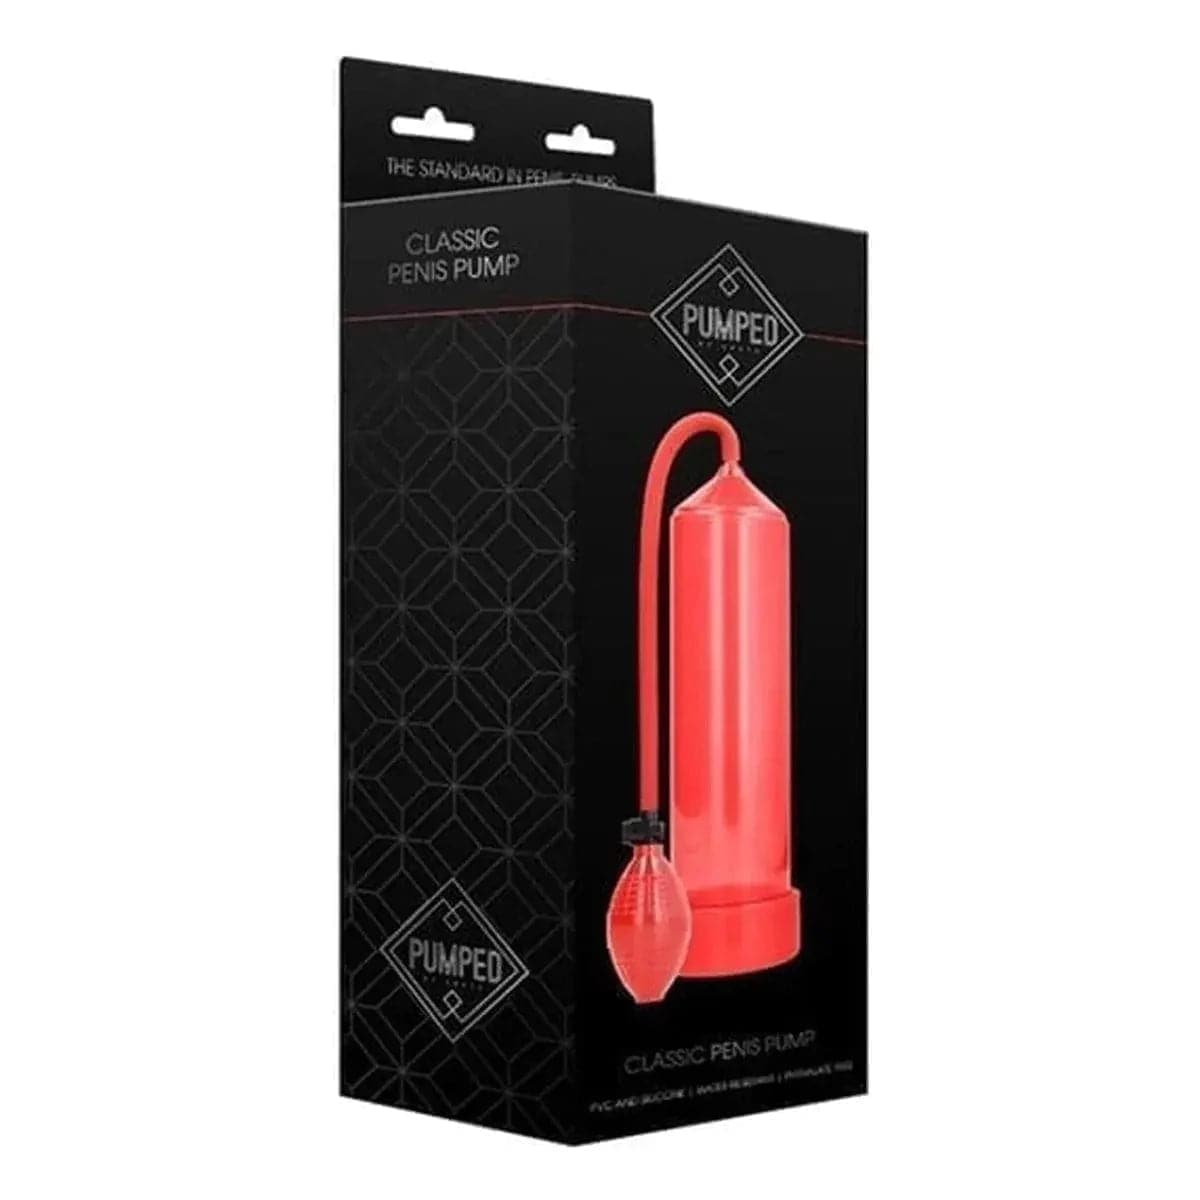 Classic Penis Pump Vermelho, Boa Sucção, 23cm Ø6cm - Pérola SexShop